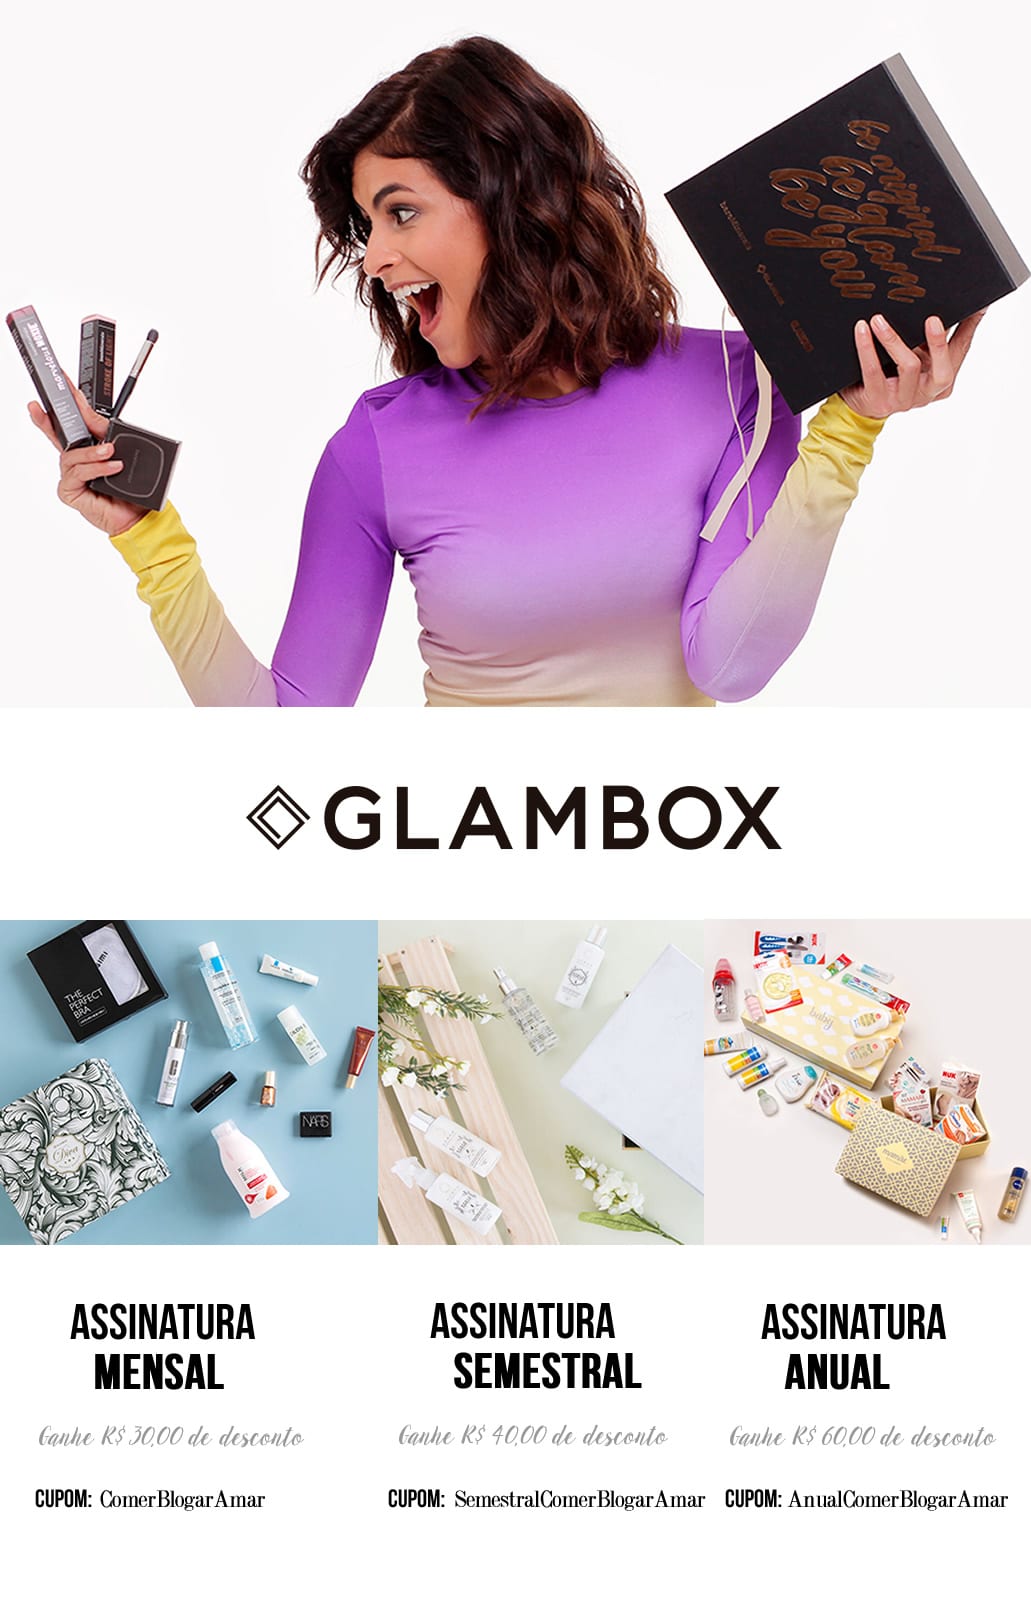 Cupom de Desconto Glambox abril 2017, como conseguir cupom de desconto glambox, Cupom de Desconto, Glambox Joy, #GlamboxJoy